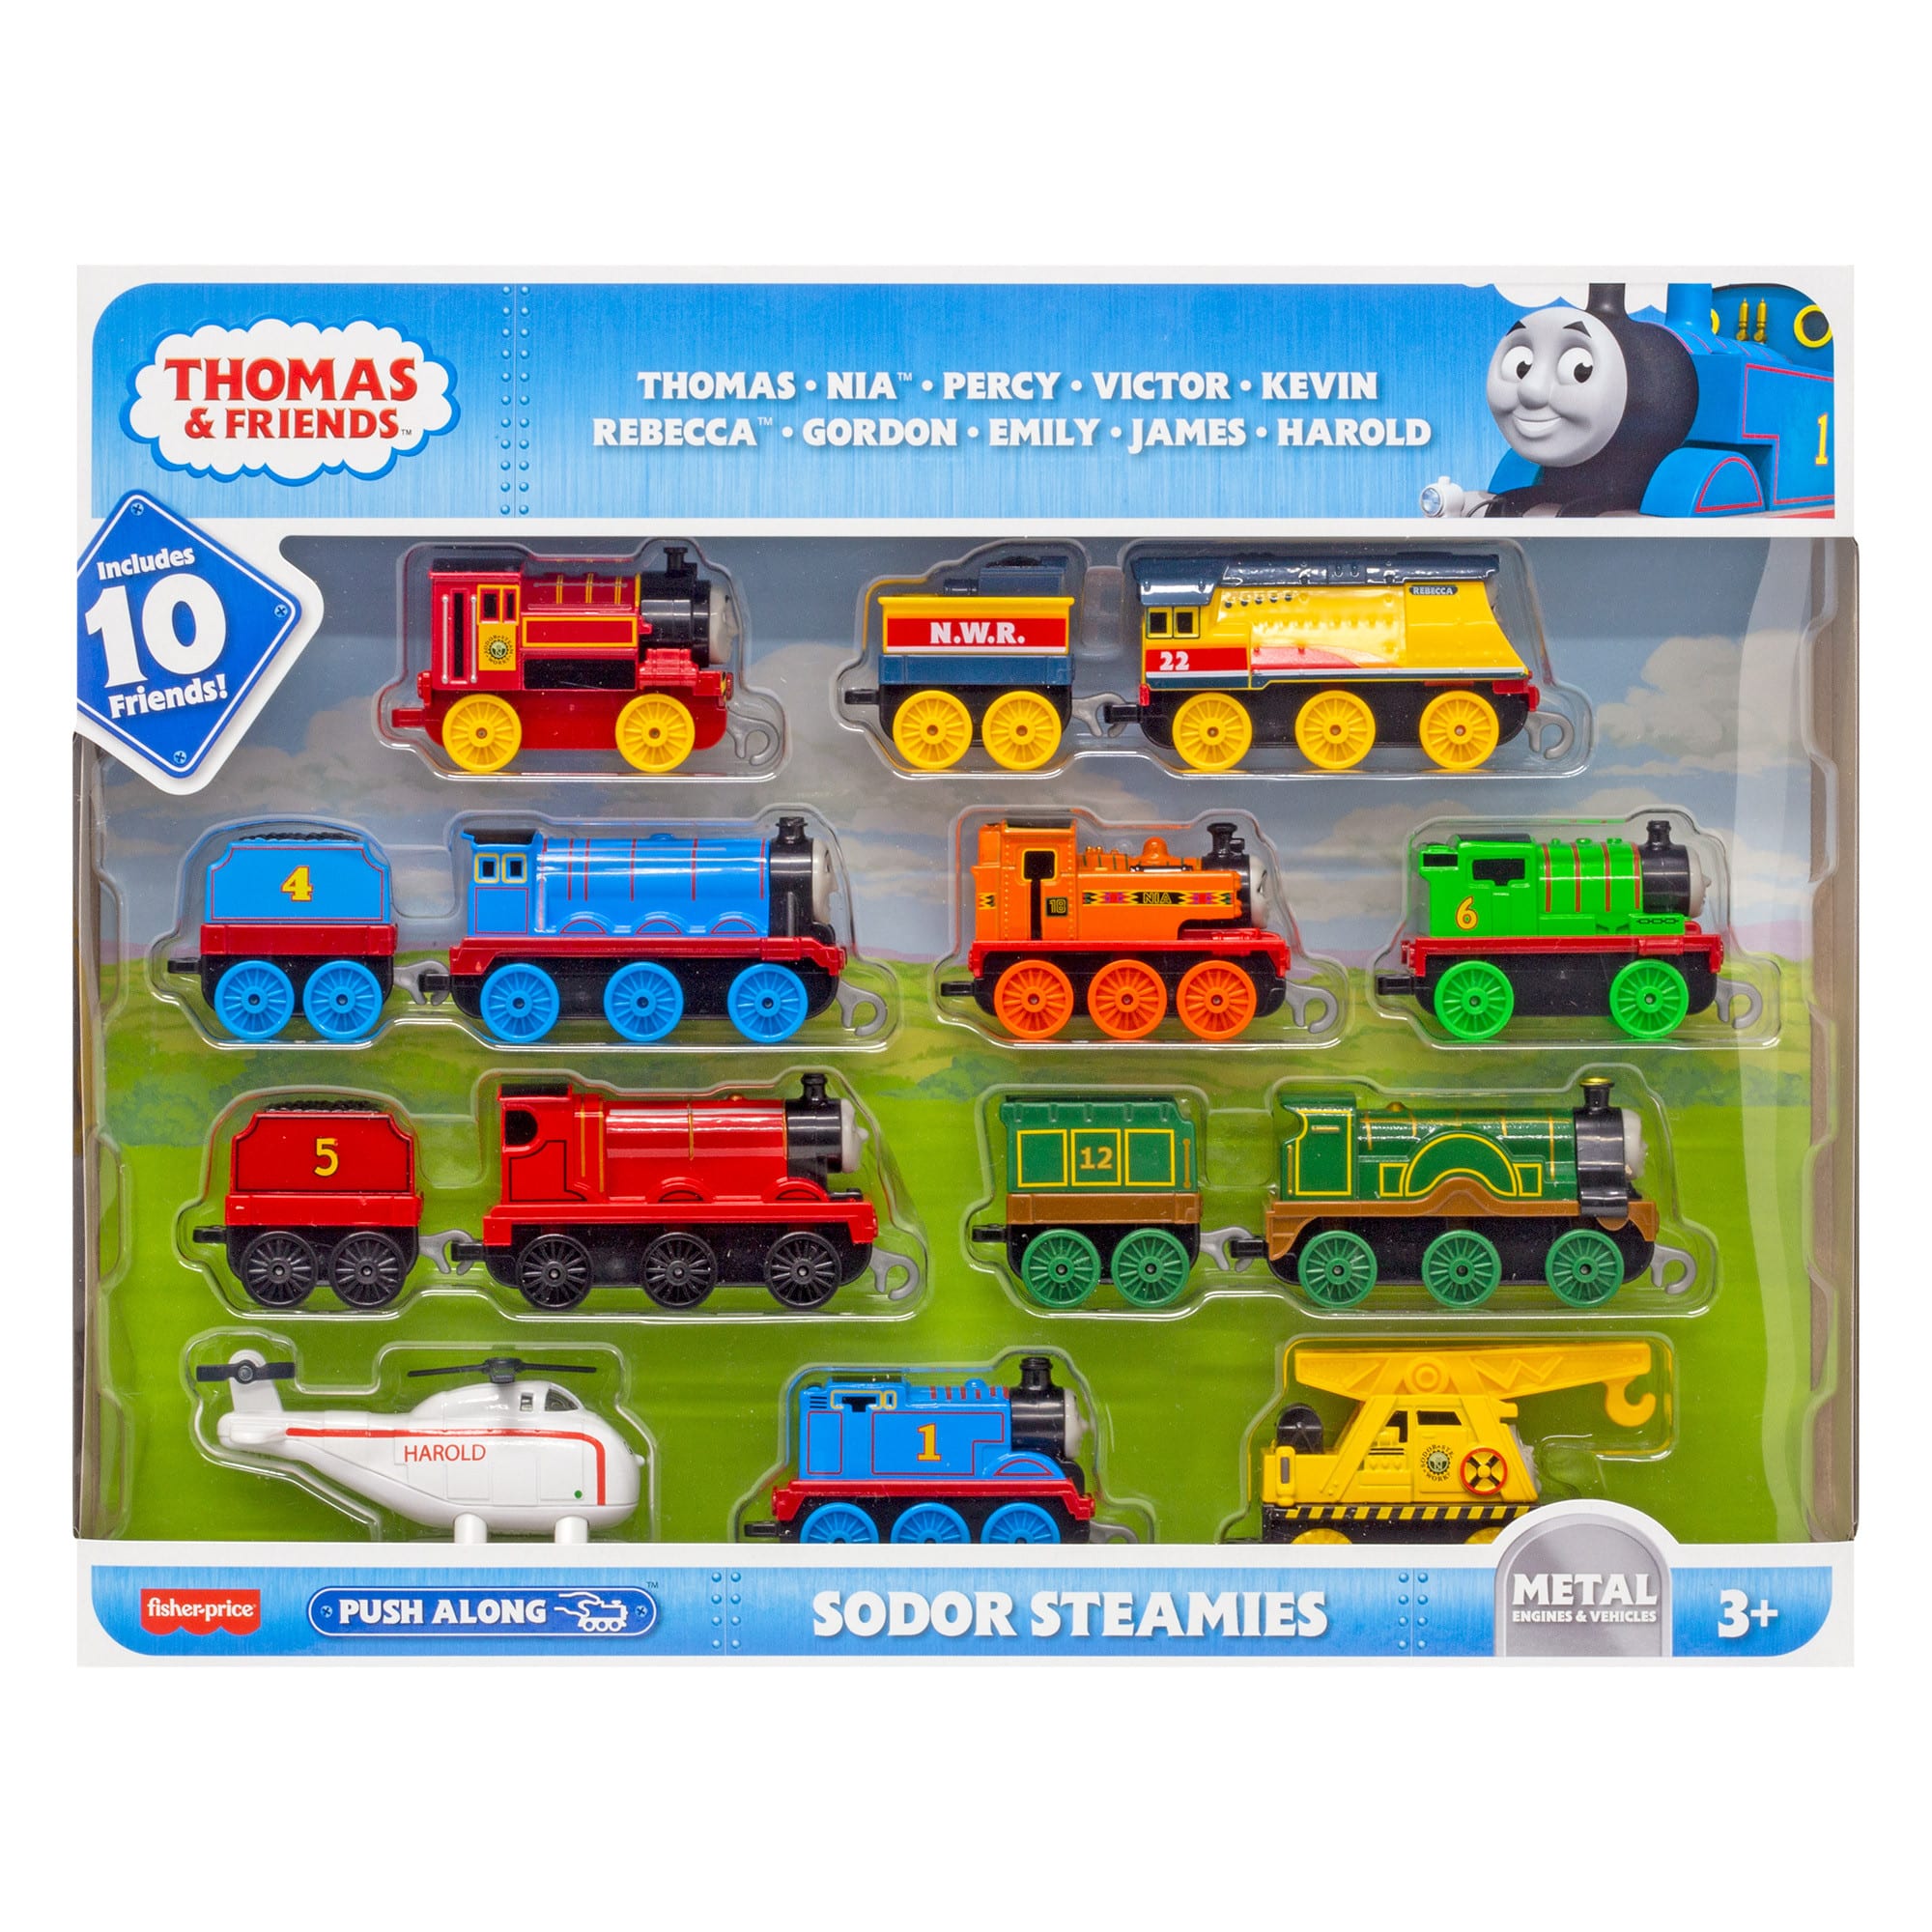 Thomas & Friends - Sodor Steamies